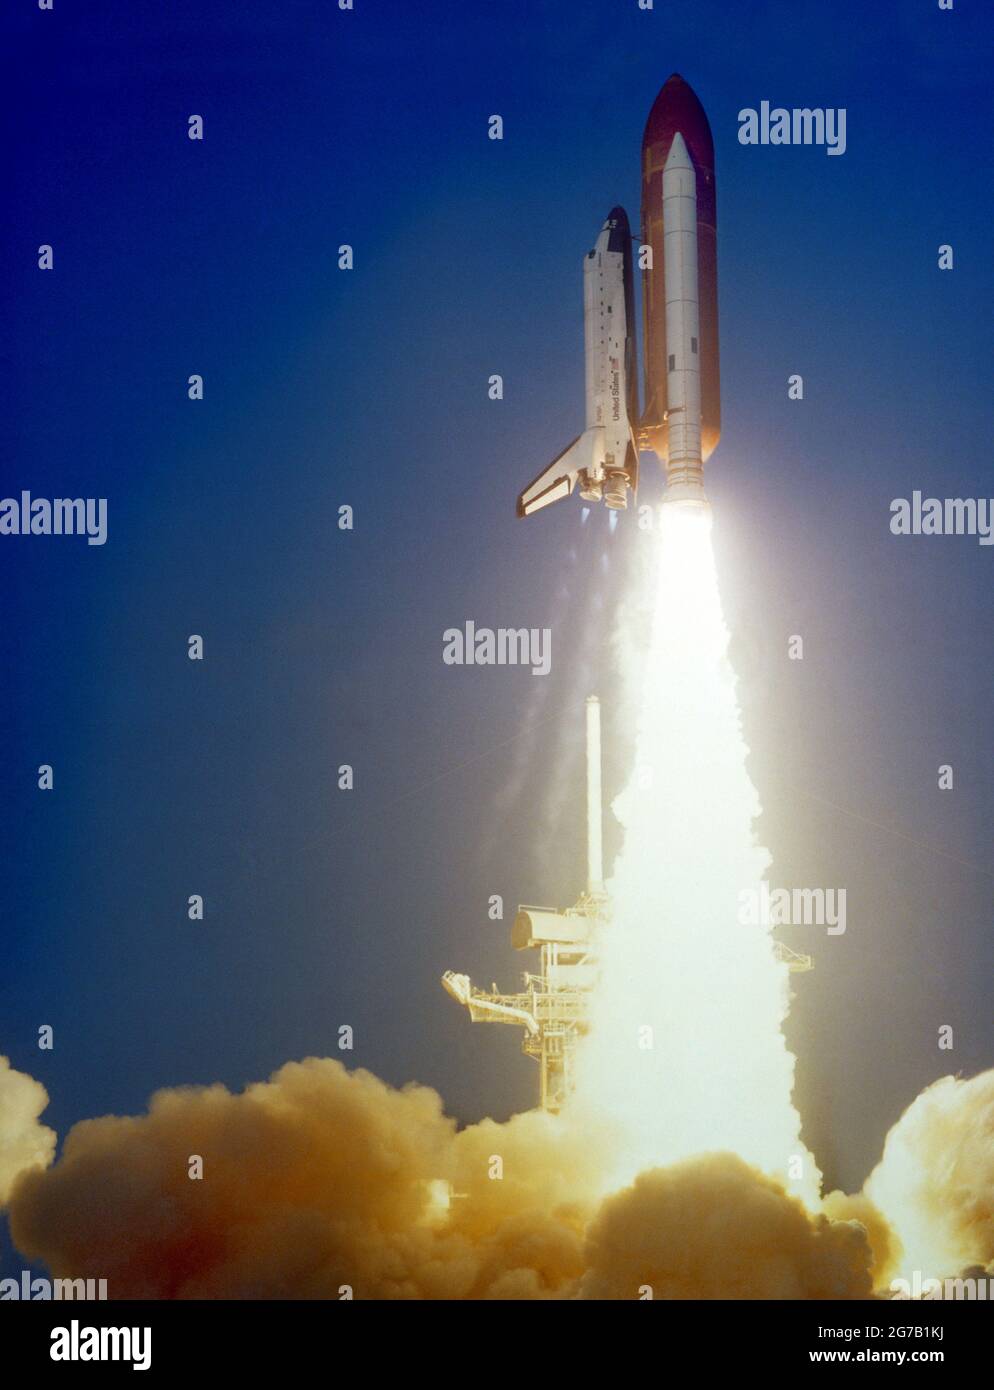 Vista del lancio dello Shuttle Challenger durante la missione STS 41-C. L'orbiter ha liberato il pattino di lancio con una grande nuvola di fumo che copre la parte inferiore del telaio. 6 aprile 1984 una versione unica ottimizzata e migliorata di un'immagine NASA / credito obbligatorio: NASA Foto Stock